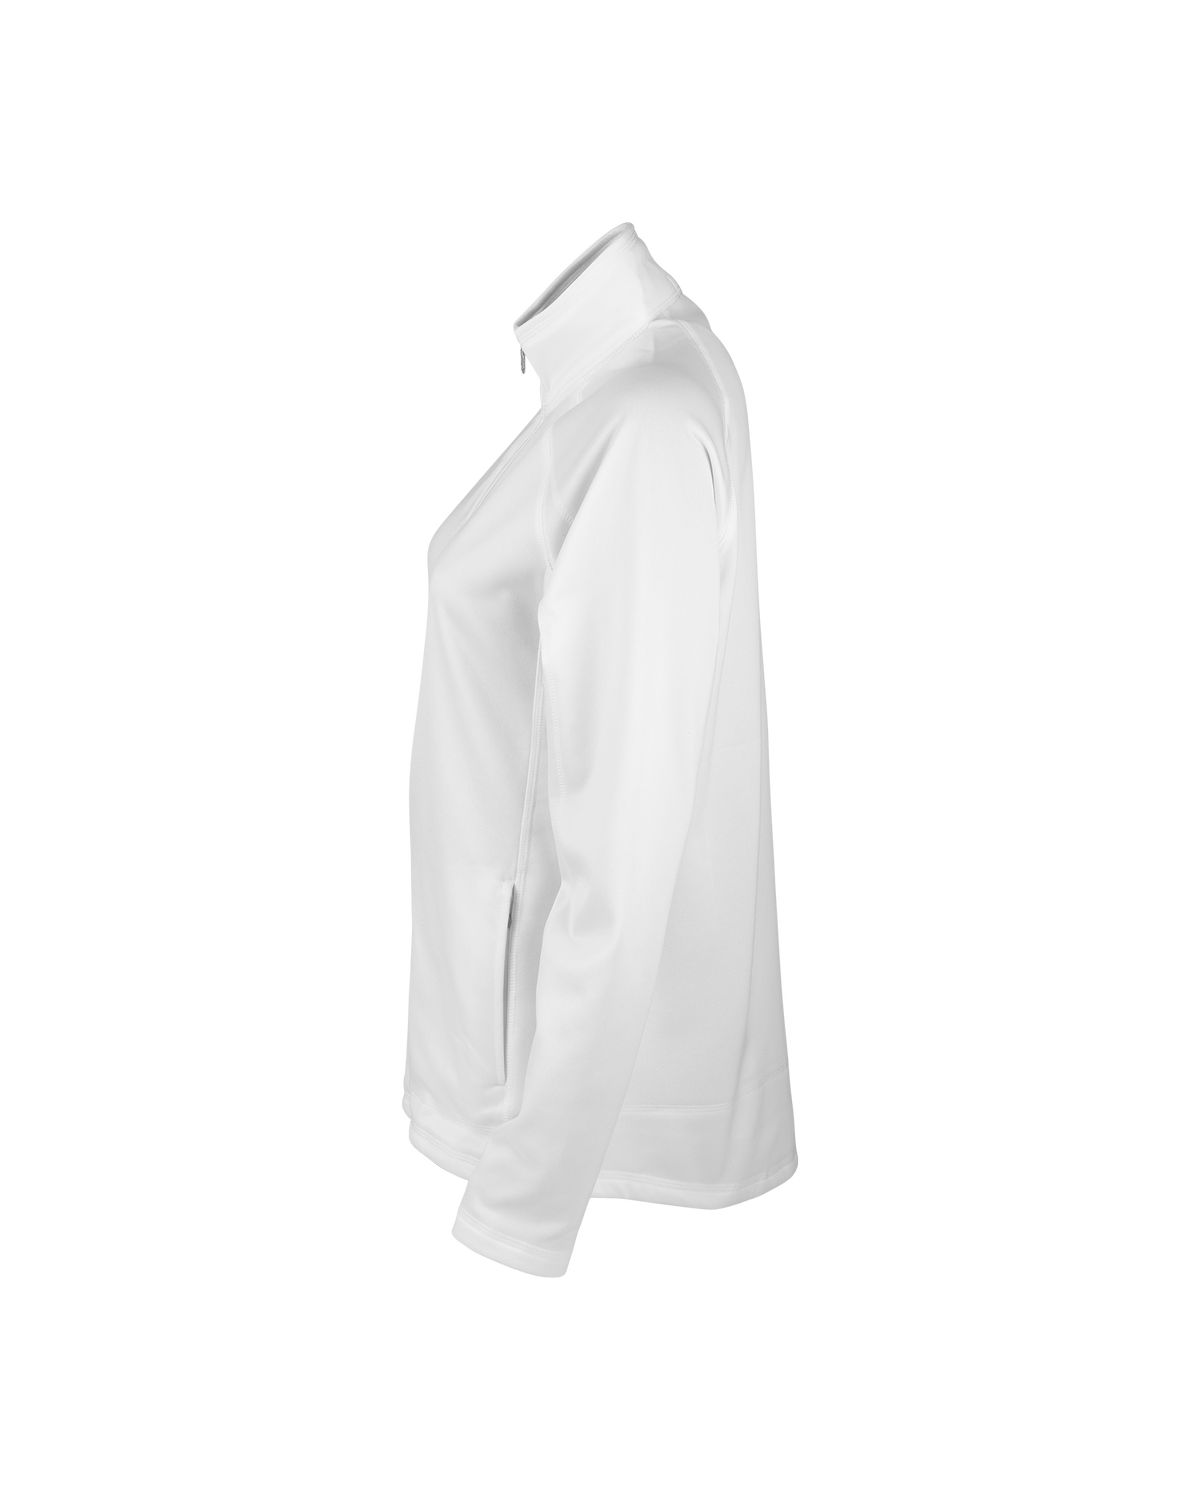 'Vantage 3271 Women's Brushed Back Micro-Fleece Full-Zip Jacket'